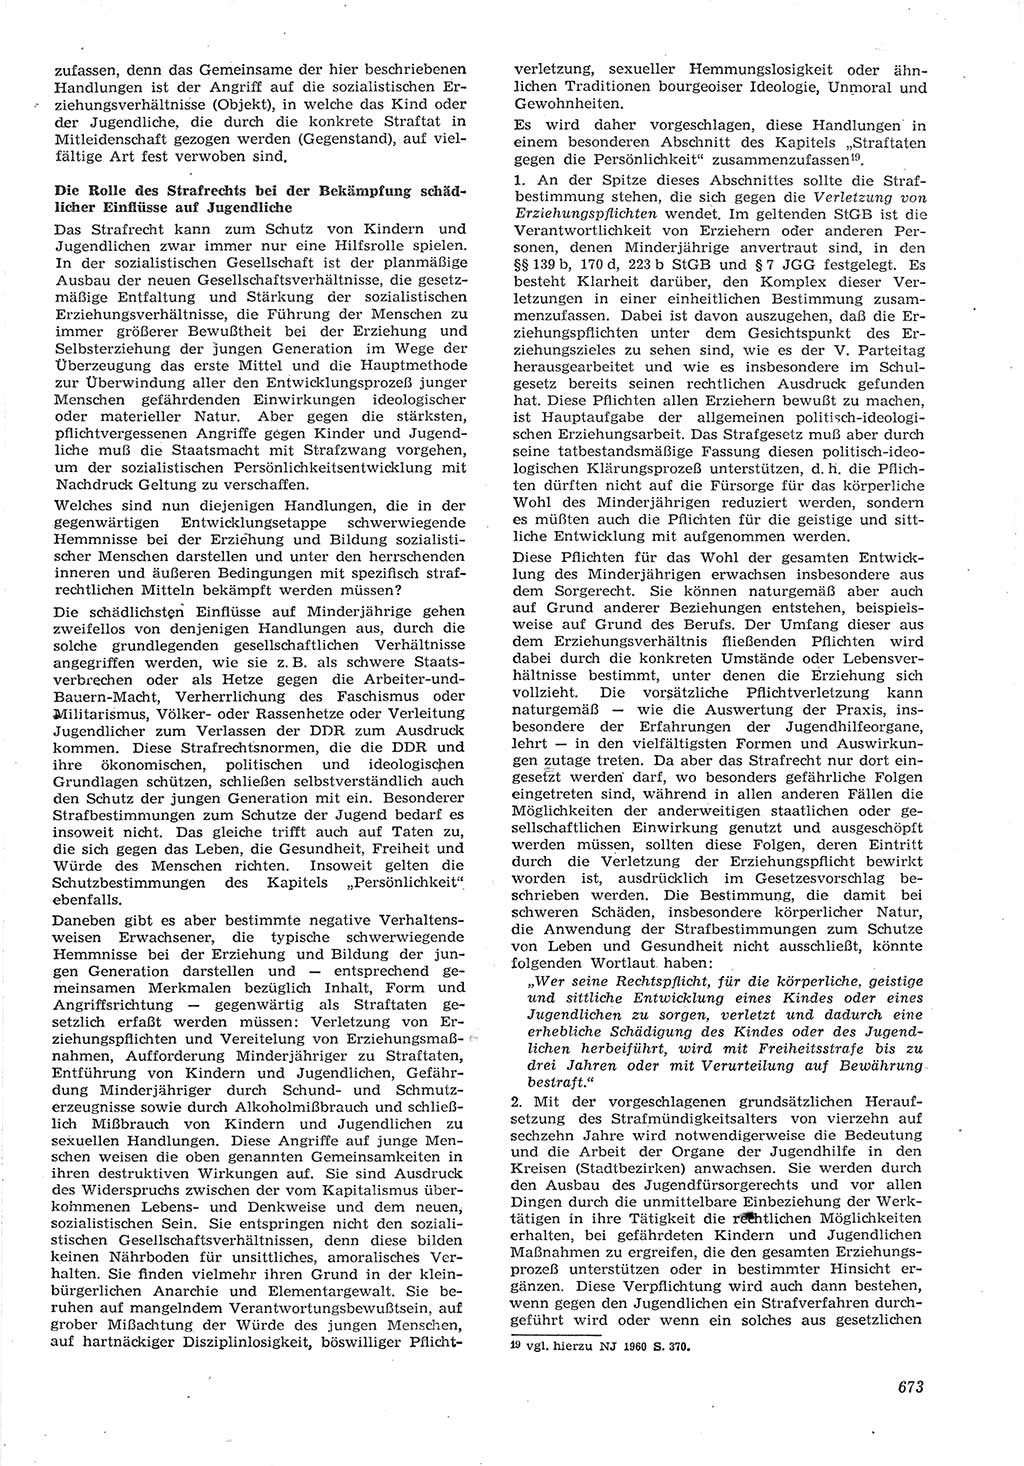 Neue Justiz (NJ), Zeitschrift für Recht und Rechtswissenschaft [Deutsche Demokratische Republik (DDR)], 15. Jahrgang 1961, Seite 673 (NJ DDR 1961, S. 673)